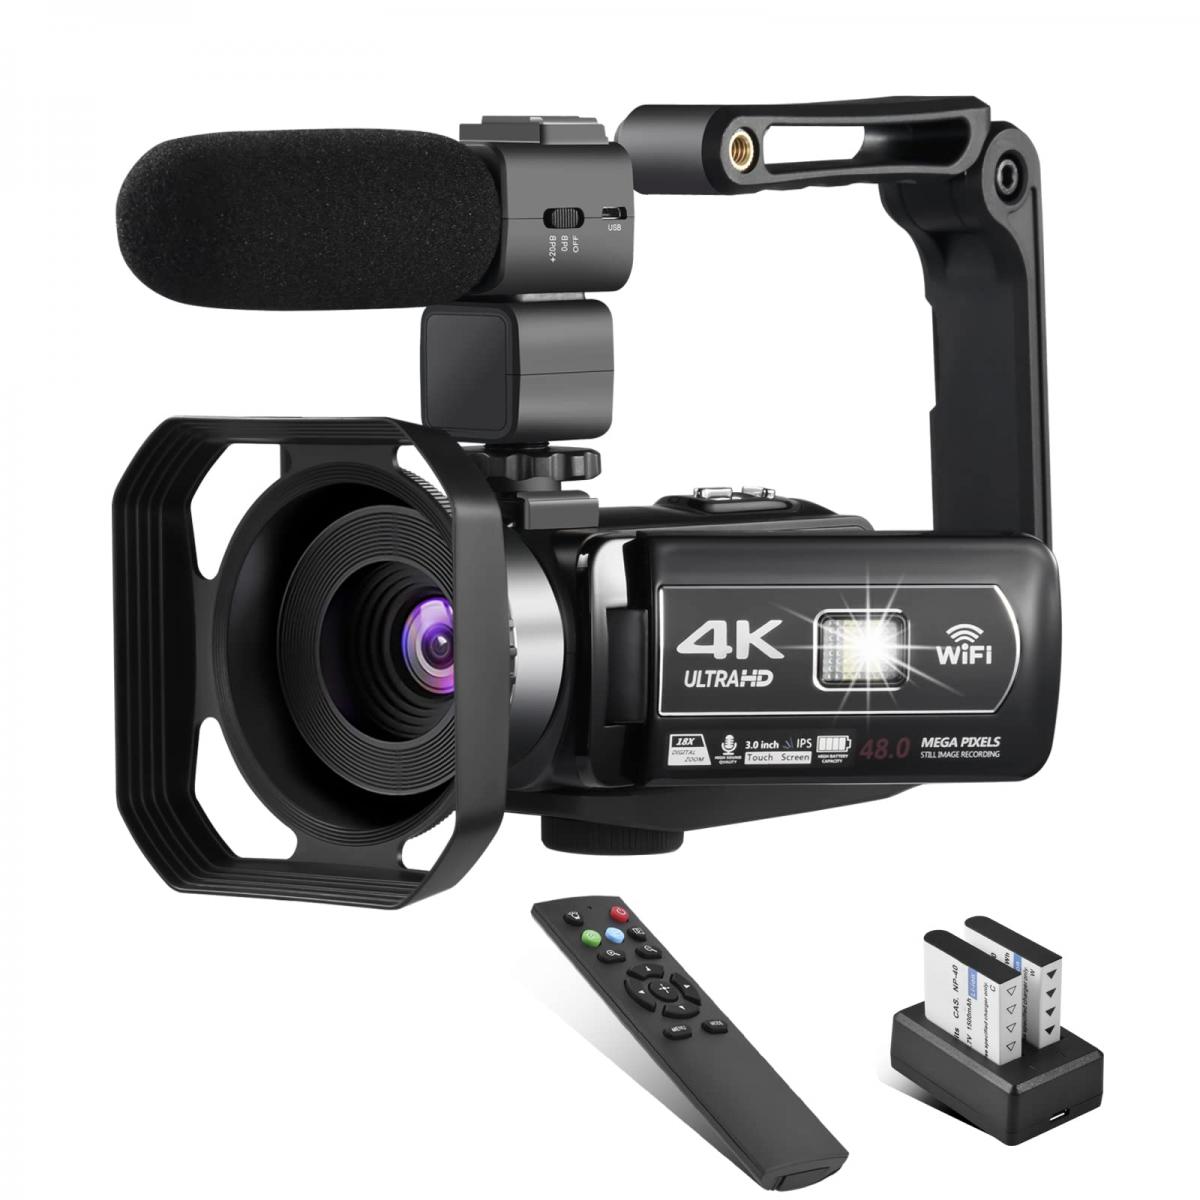  YEEIN Cámara de video 4K, videocámara con visión nocturna IR,  cámara digital WiFi para grabación de video, pantalla táctil de 3 pulgadas,  zoom digital 18X, cámara de vlogging para , control